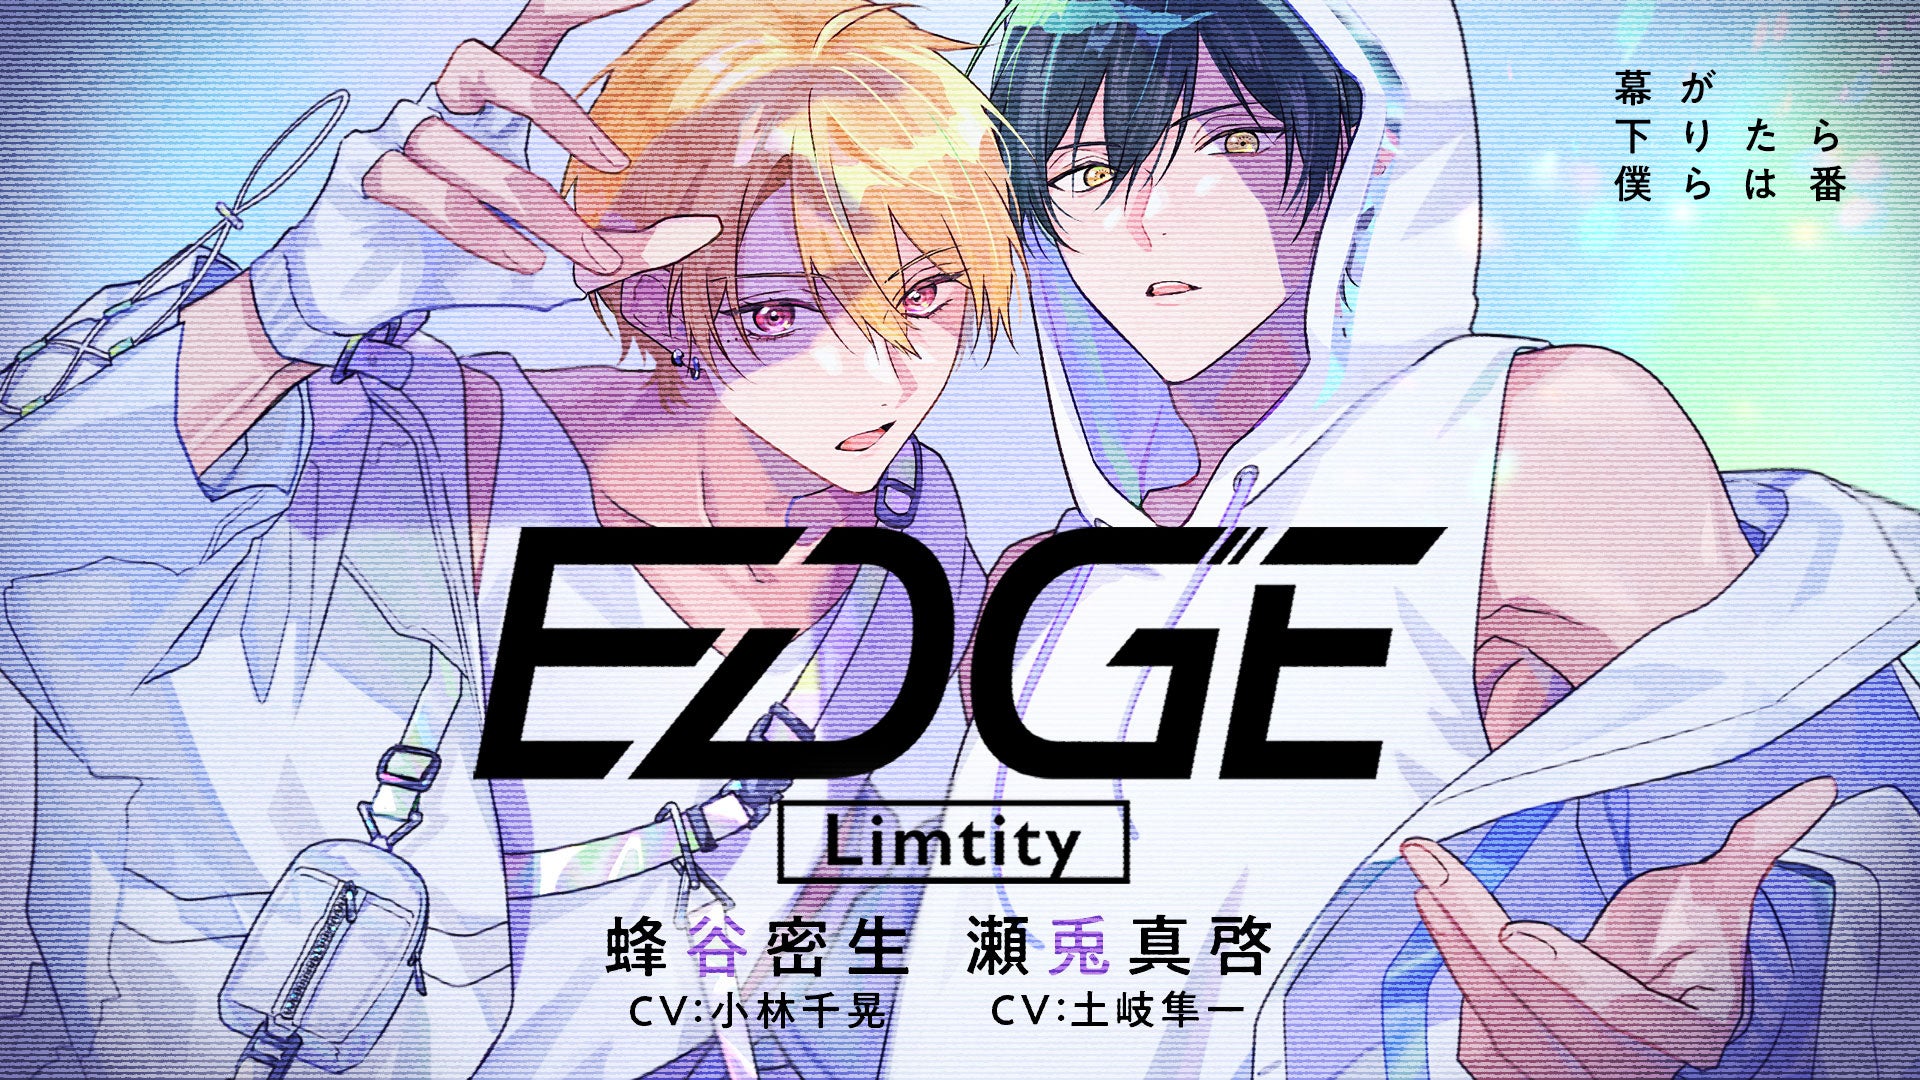 アイドルユニット “Limtity”（cv. 小林千晃／土岐隼一）がCDデビュー！本日より、YouTubeにて新曲「EDGE」のミュージックビデオ（MV）を公開